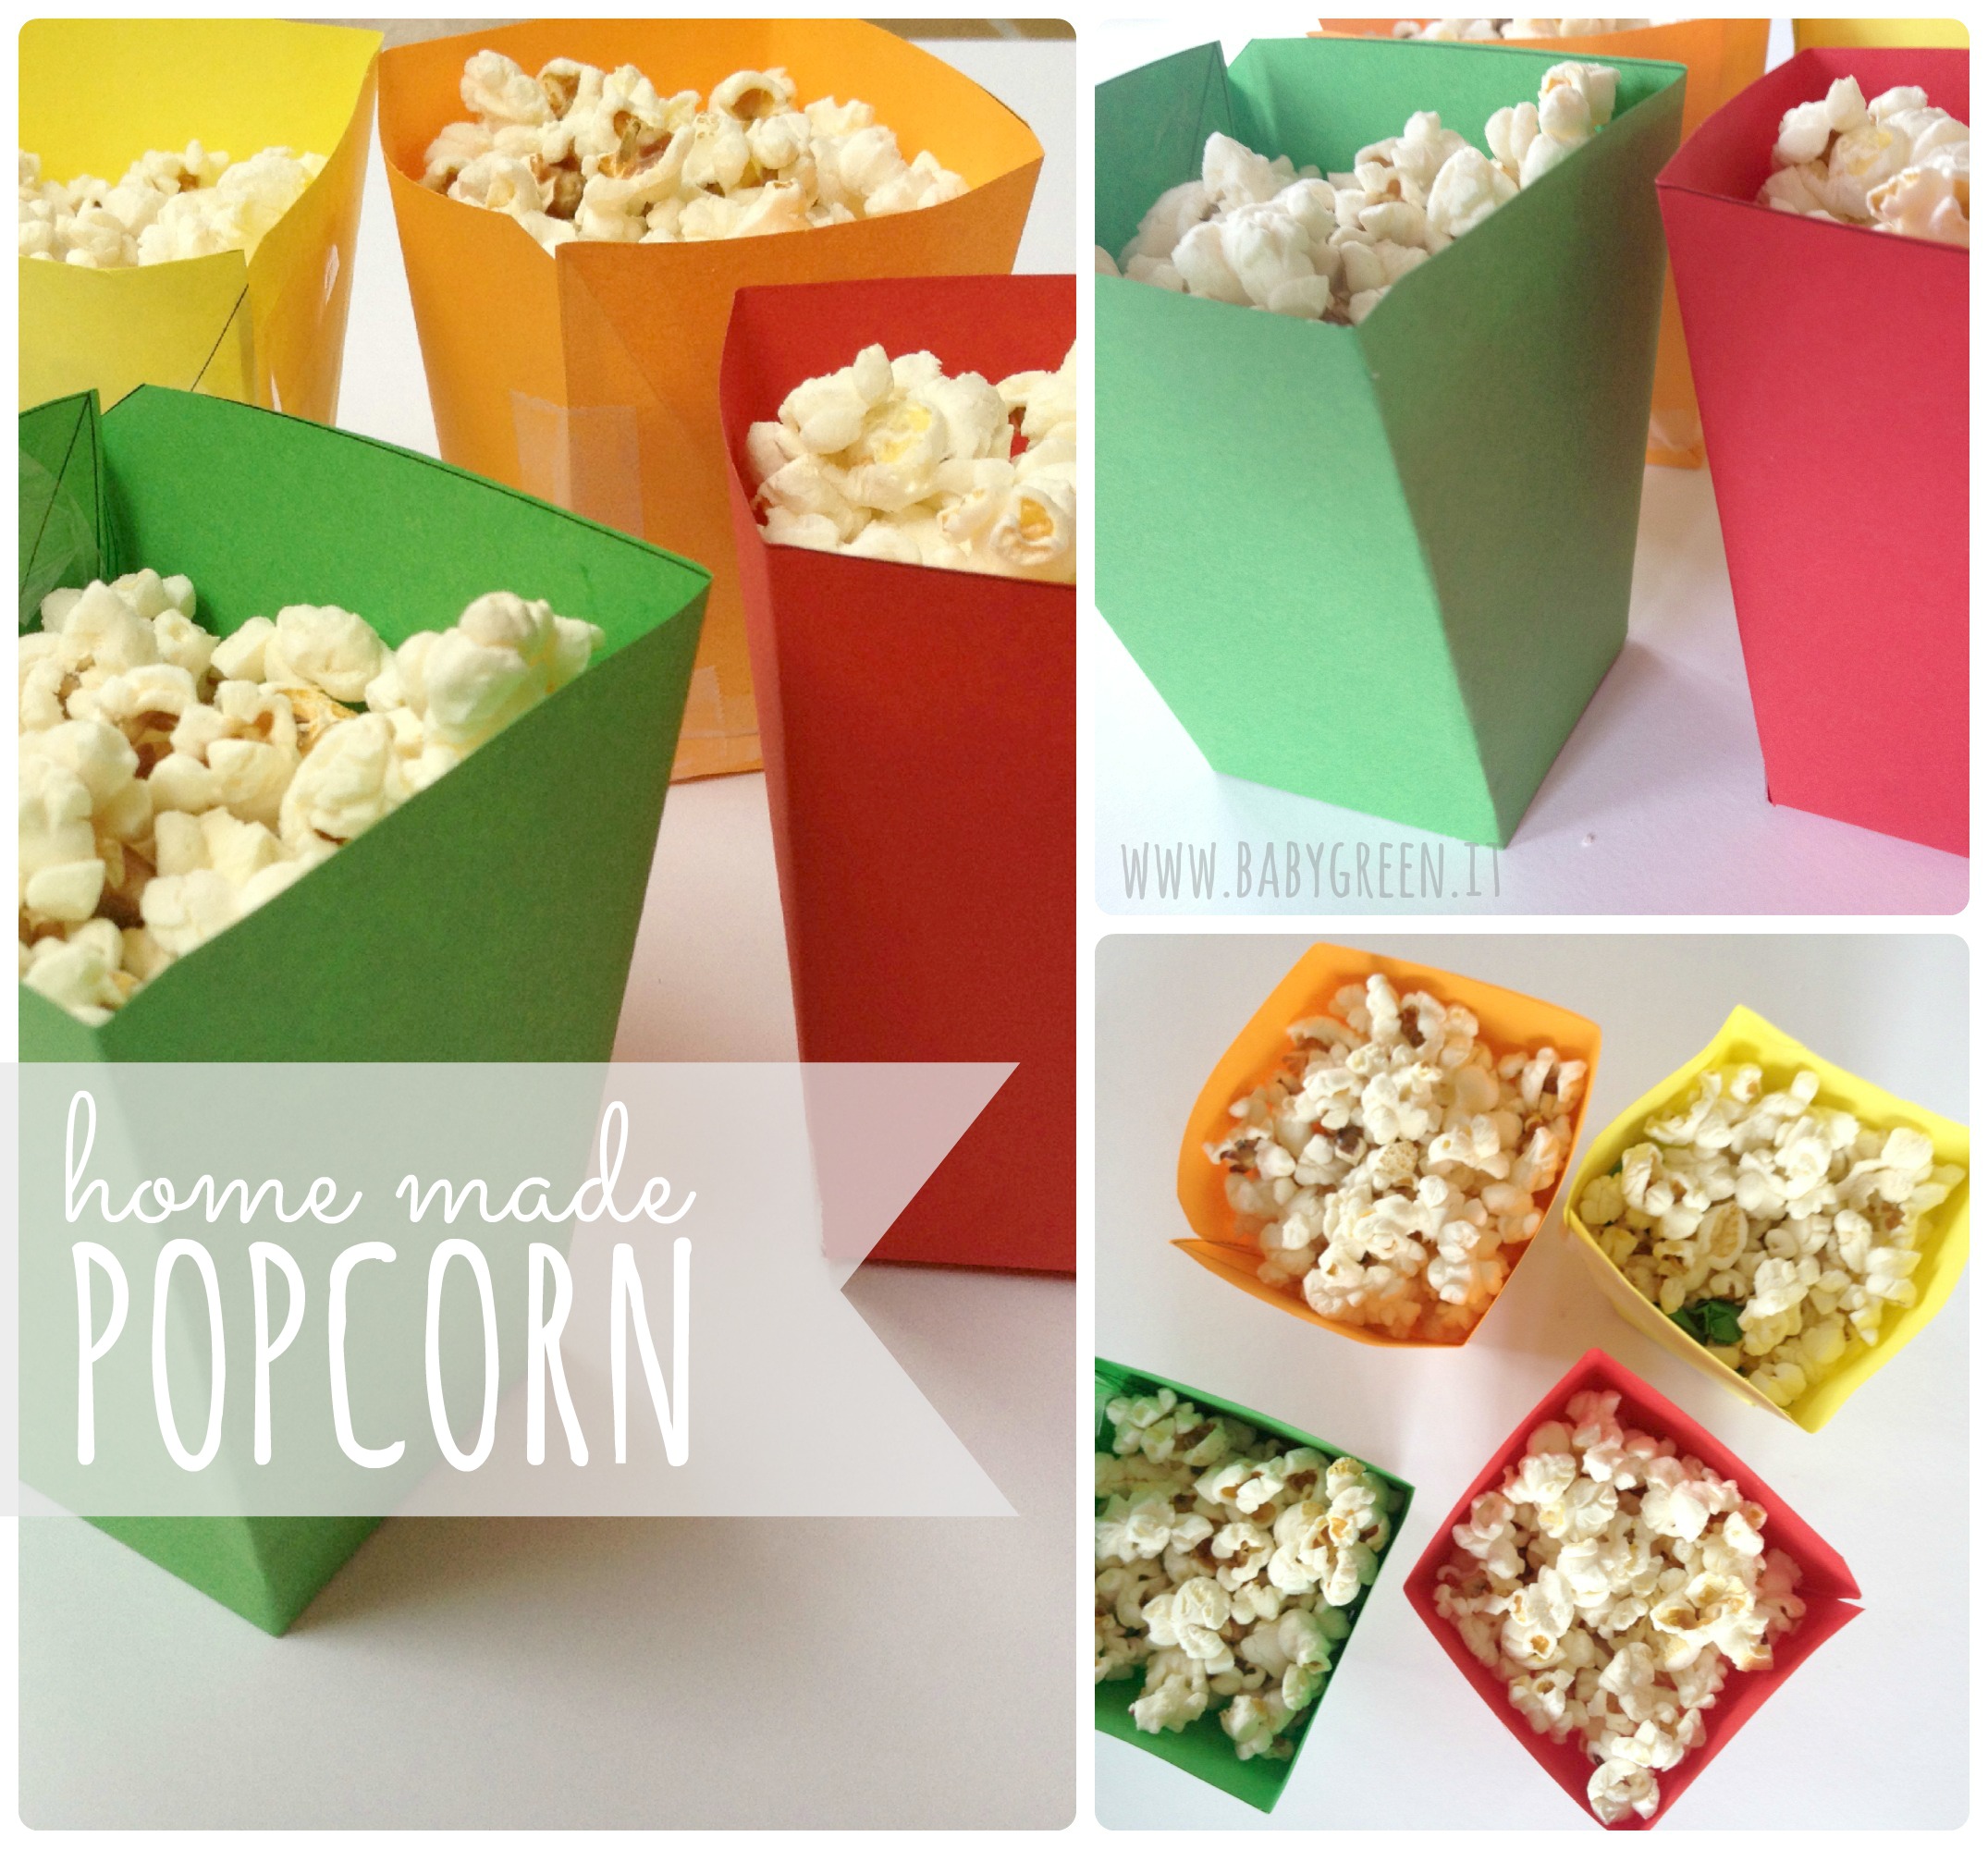 Popcorn fatti in casa - BabyGreen